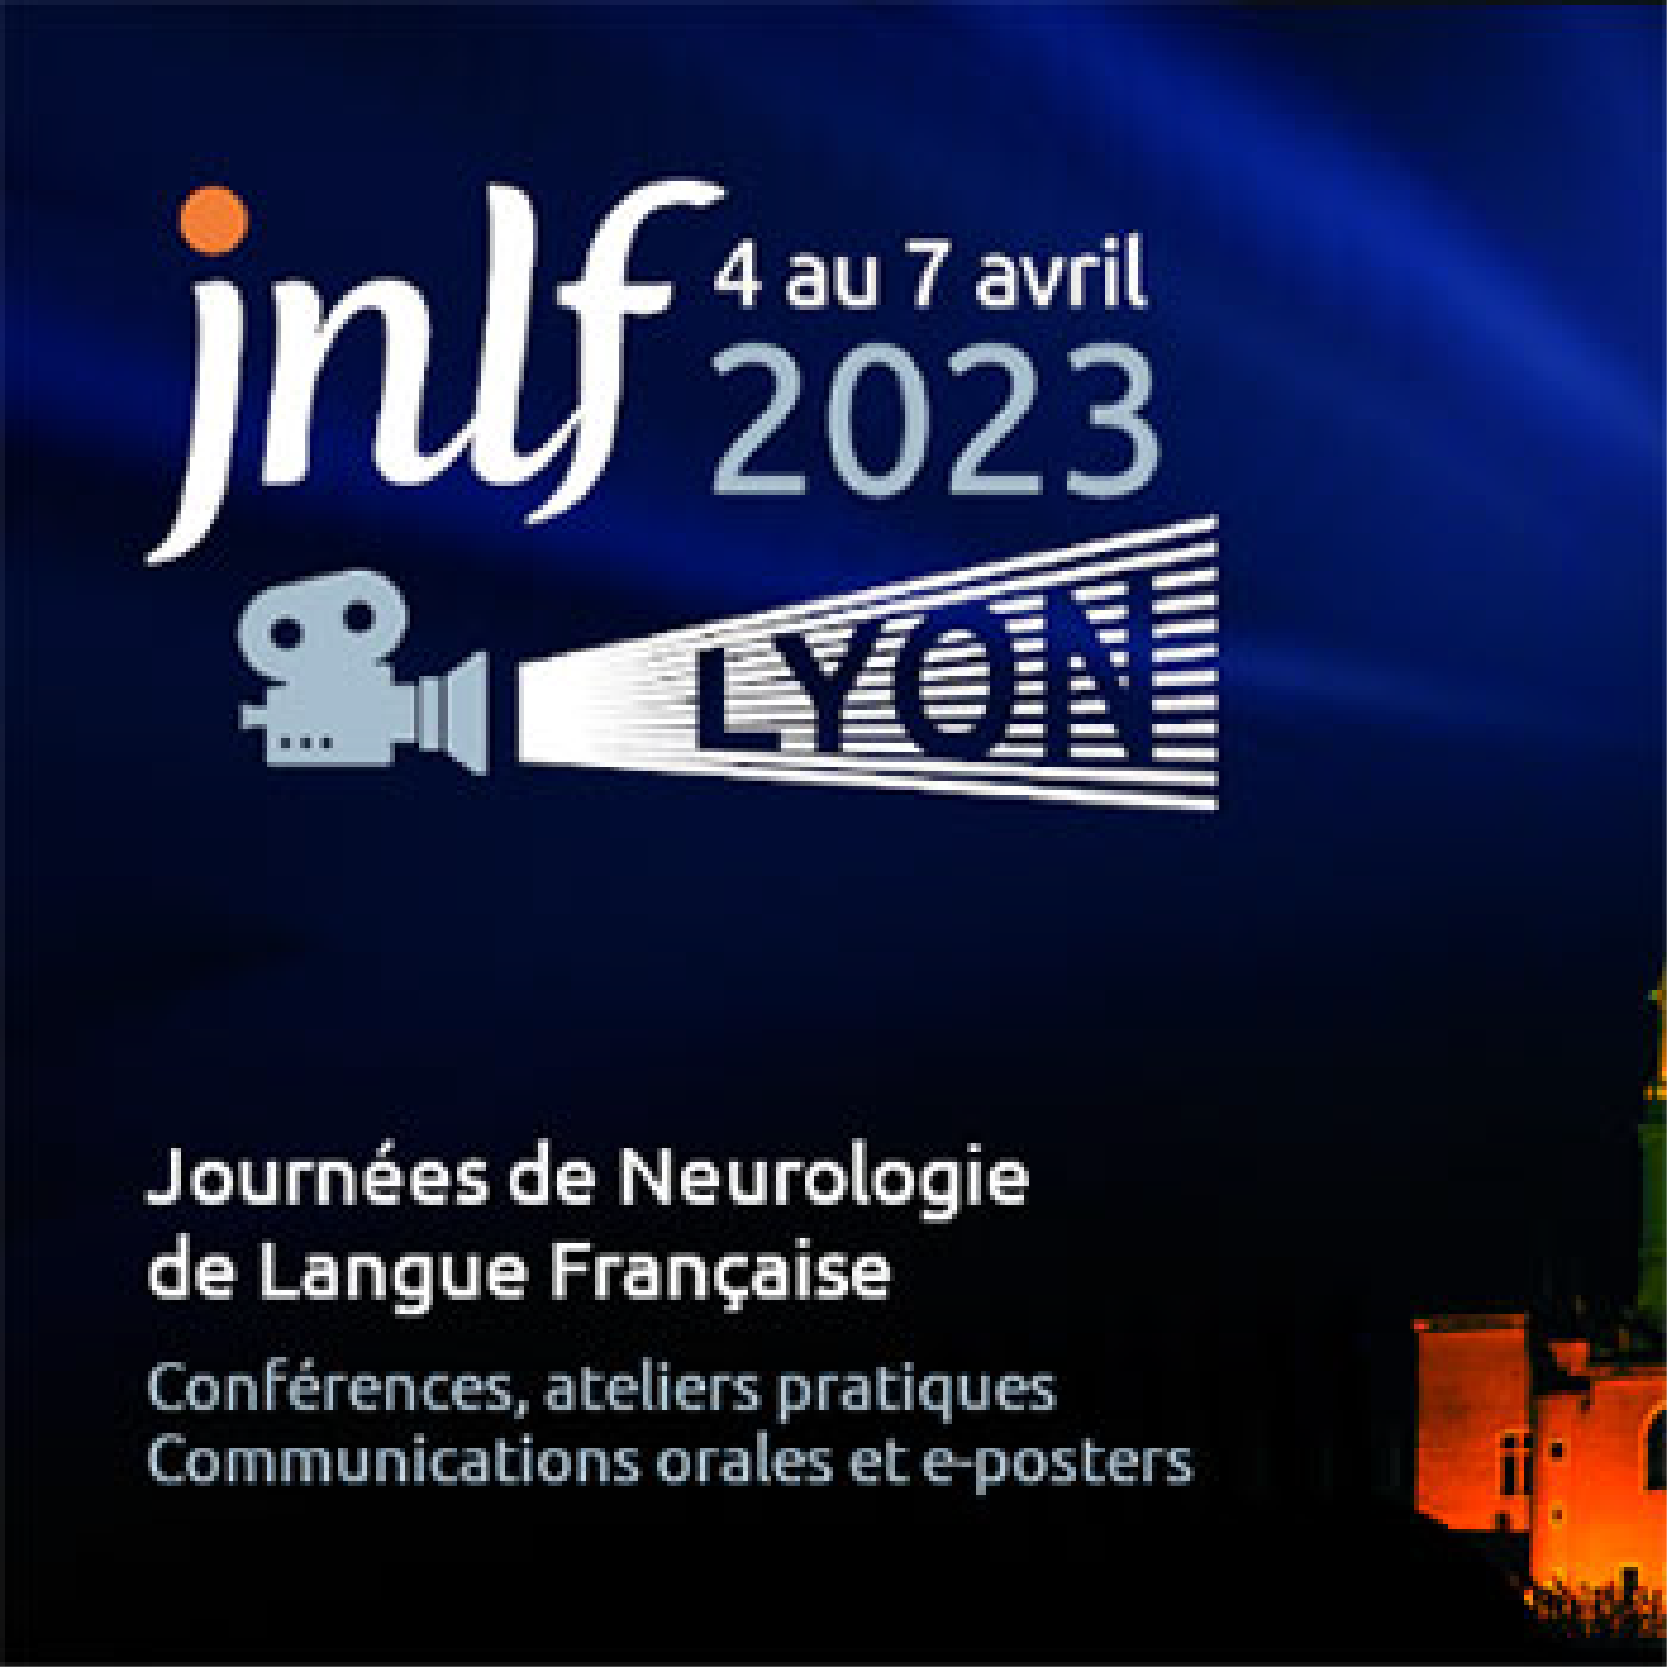 JNLF 2023 - French Congress of Neurology (CME VIDEOS)